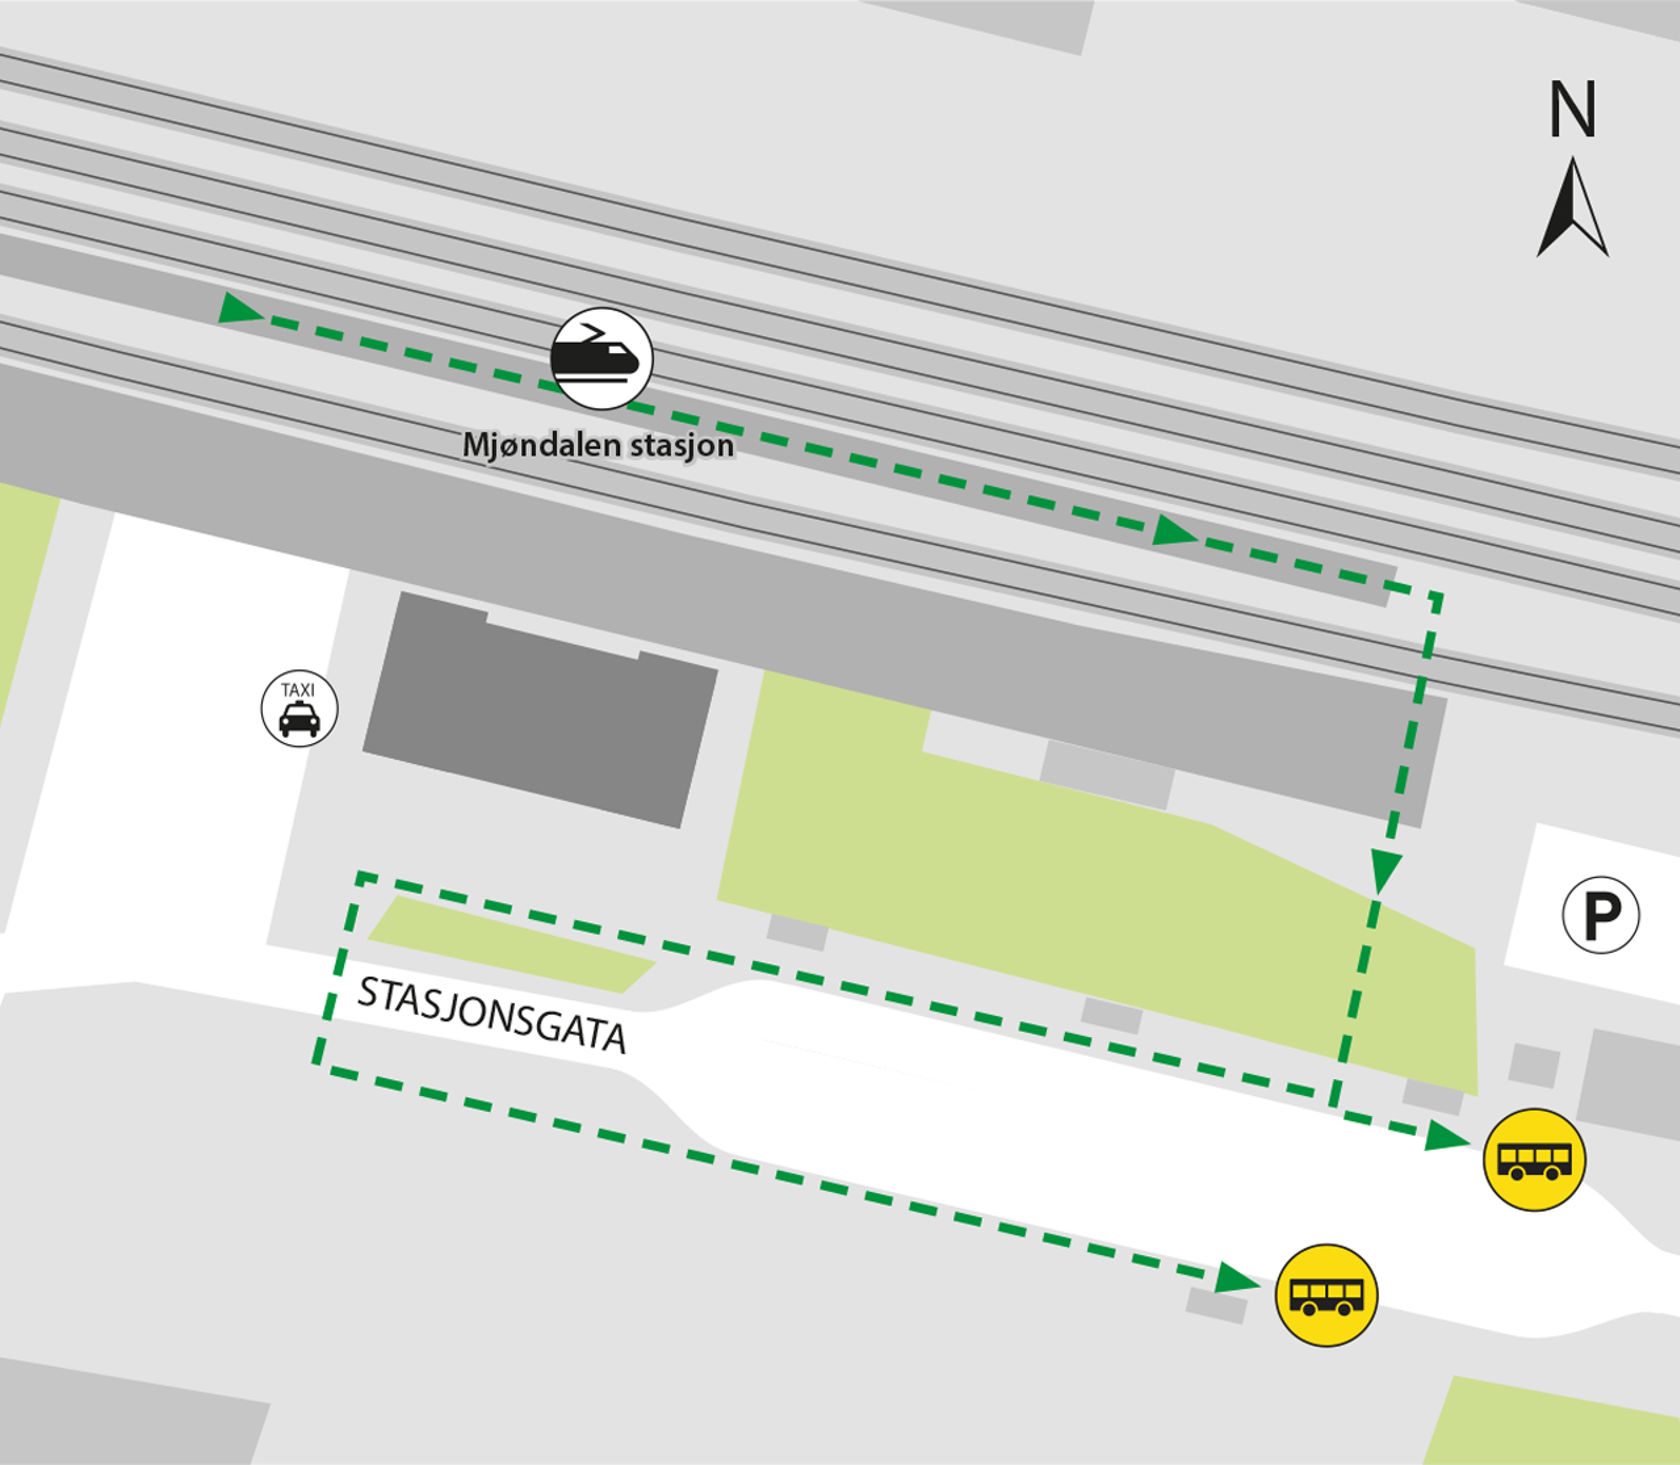 Kartet viser at bussene kjører fra bussholdeplassen Mjøndalen stasjon